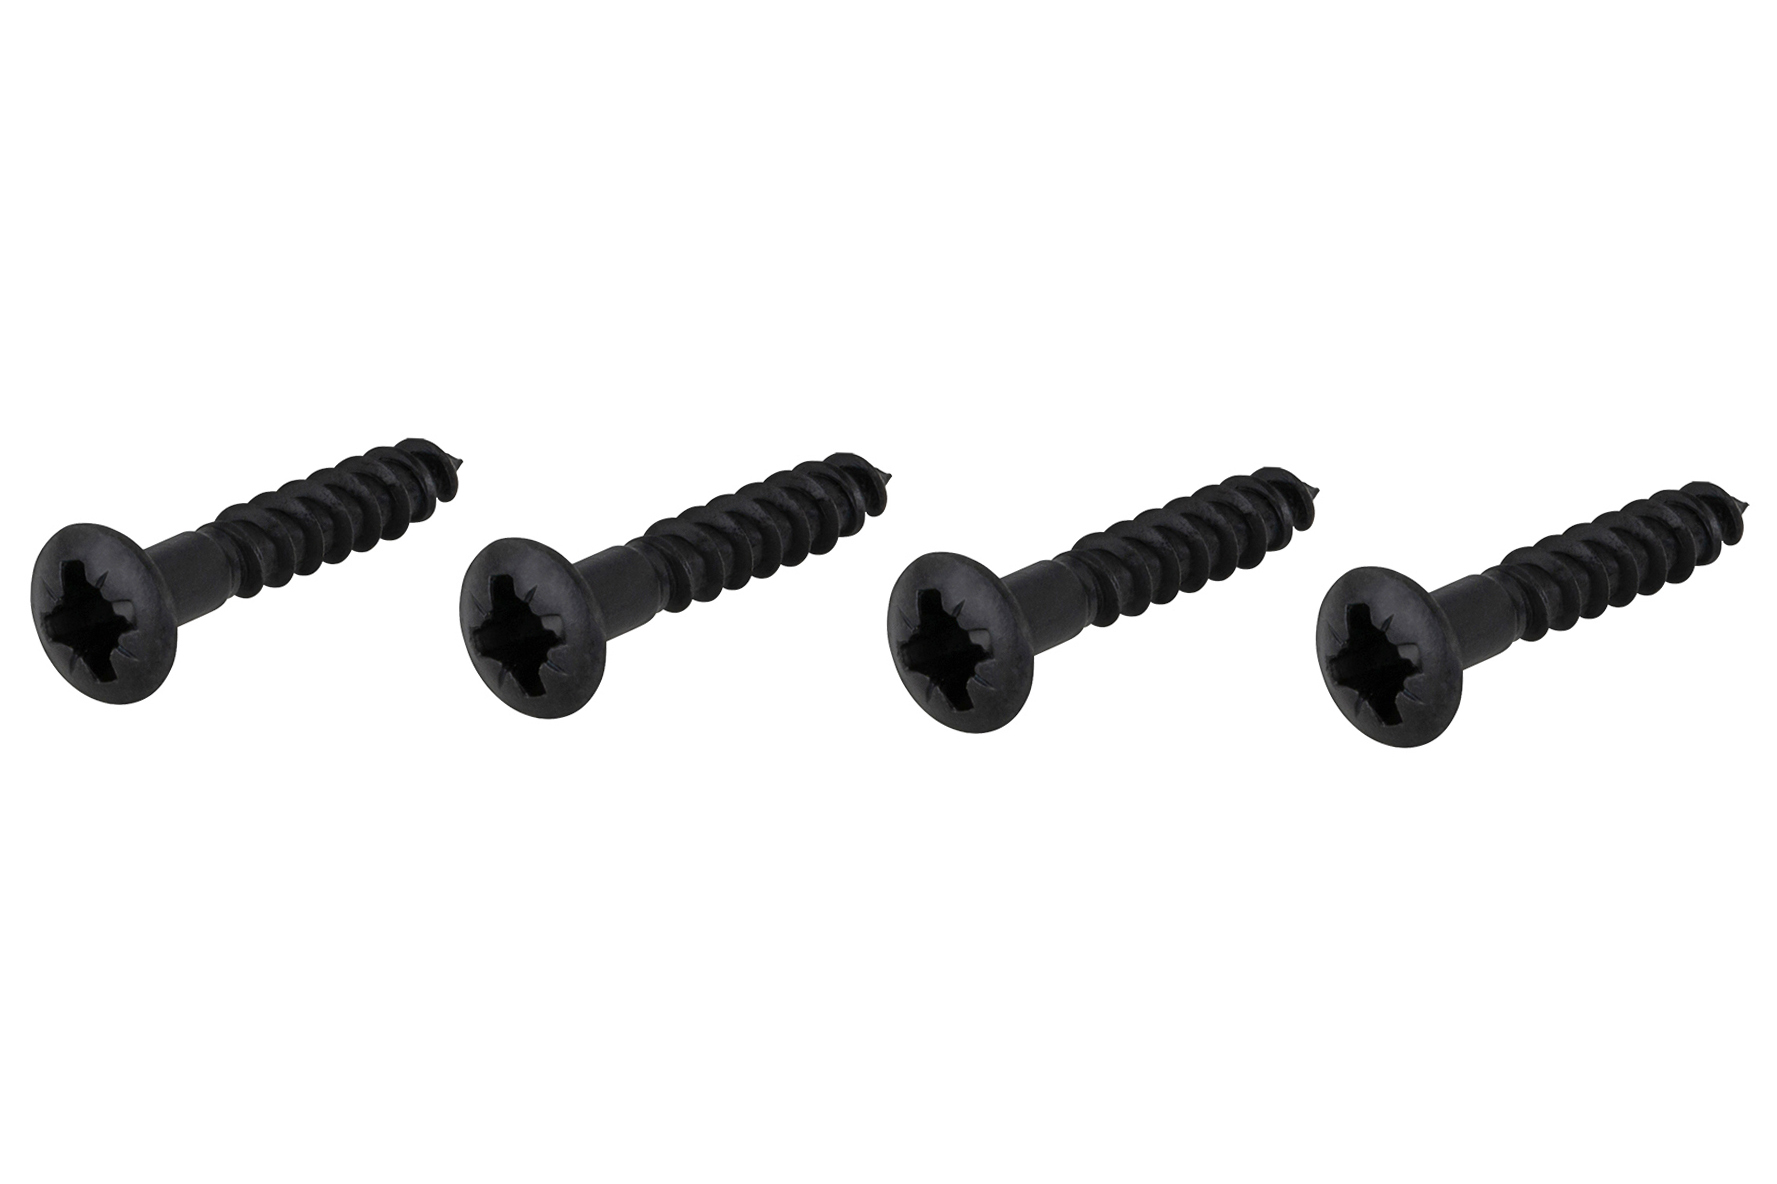 Framus & Warwick Parts - Countersunk Bridge Screw, 3,5 mm x 20 mm, 4 pcs. - Black